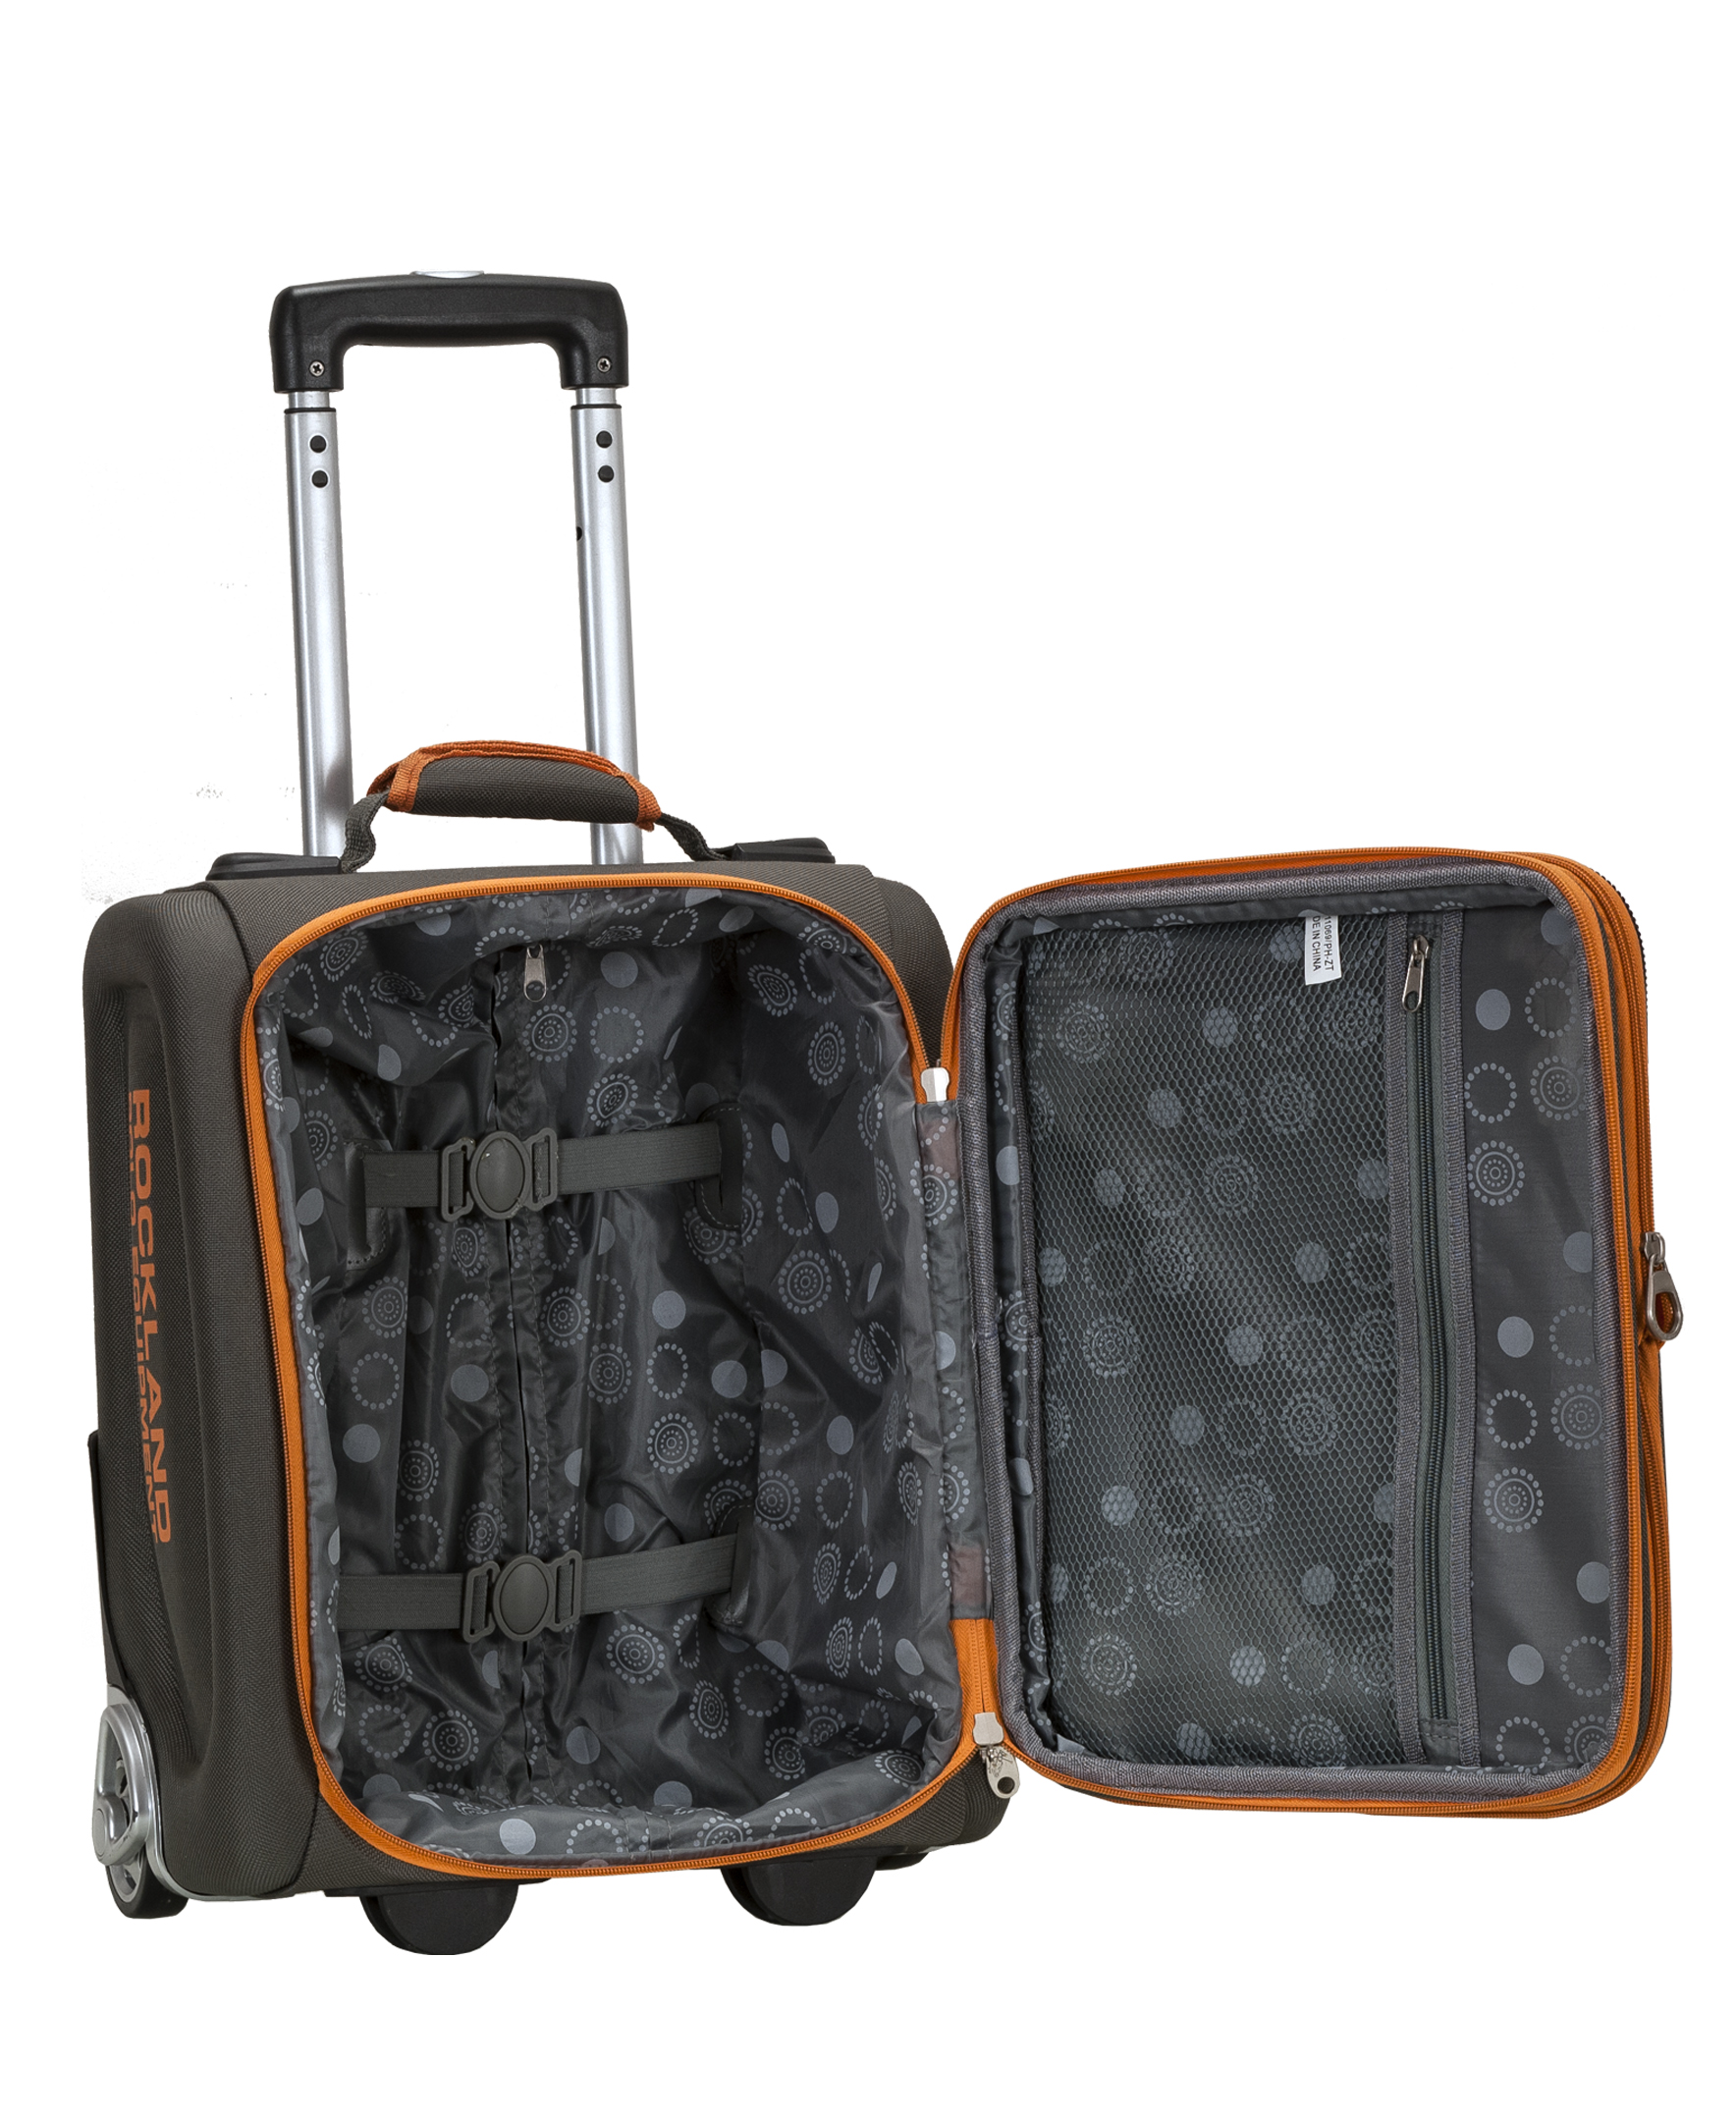 Rockland Luggage Varsity 4-Piece Softside Expandable Luggage Set F120 - image 5 of 6